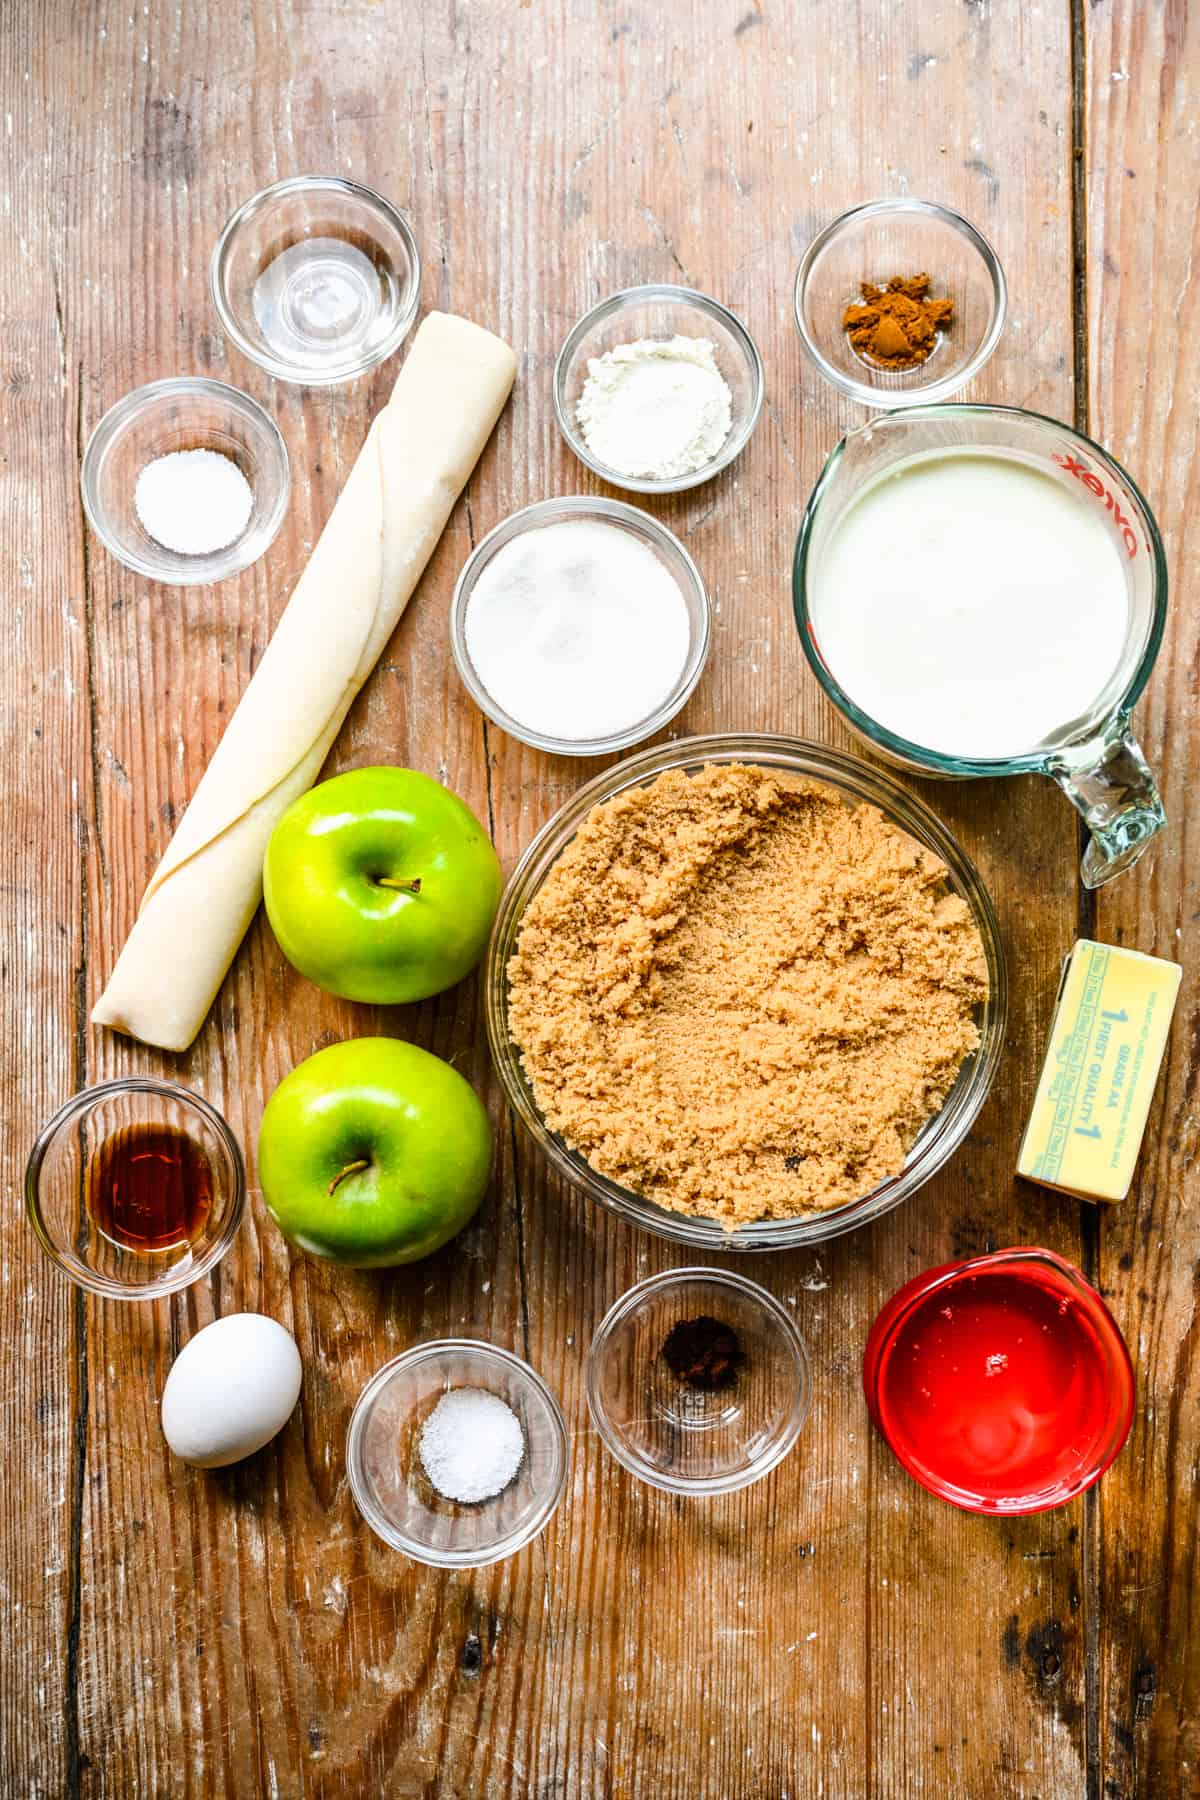 ingredients to make caramel apple tart